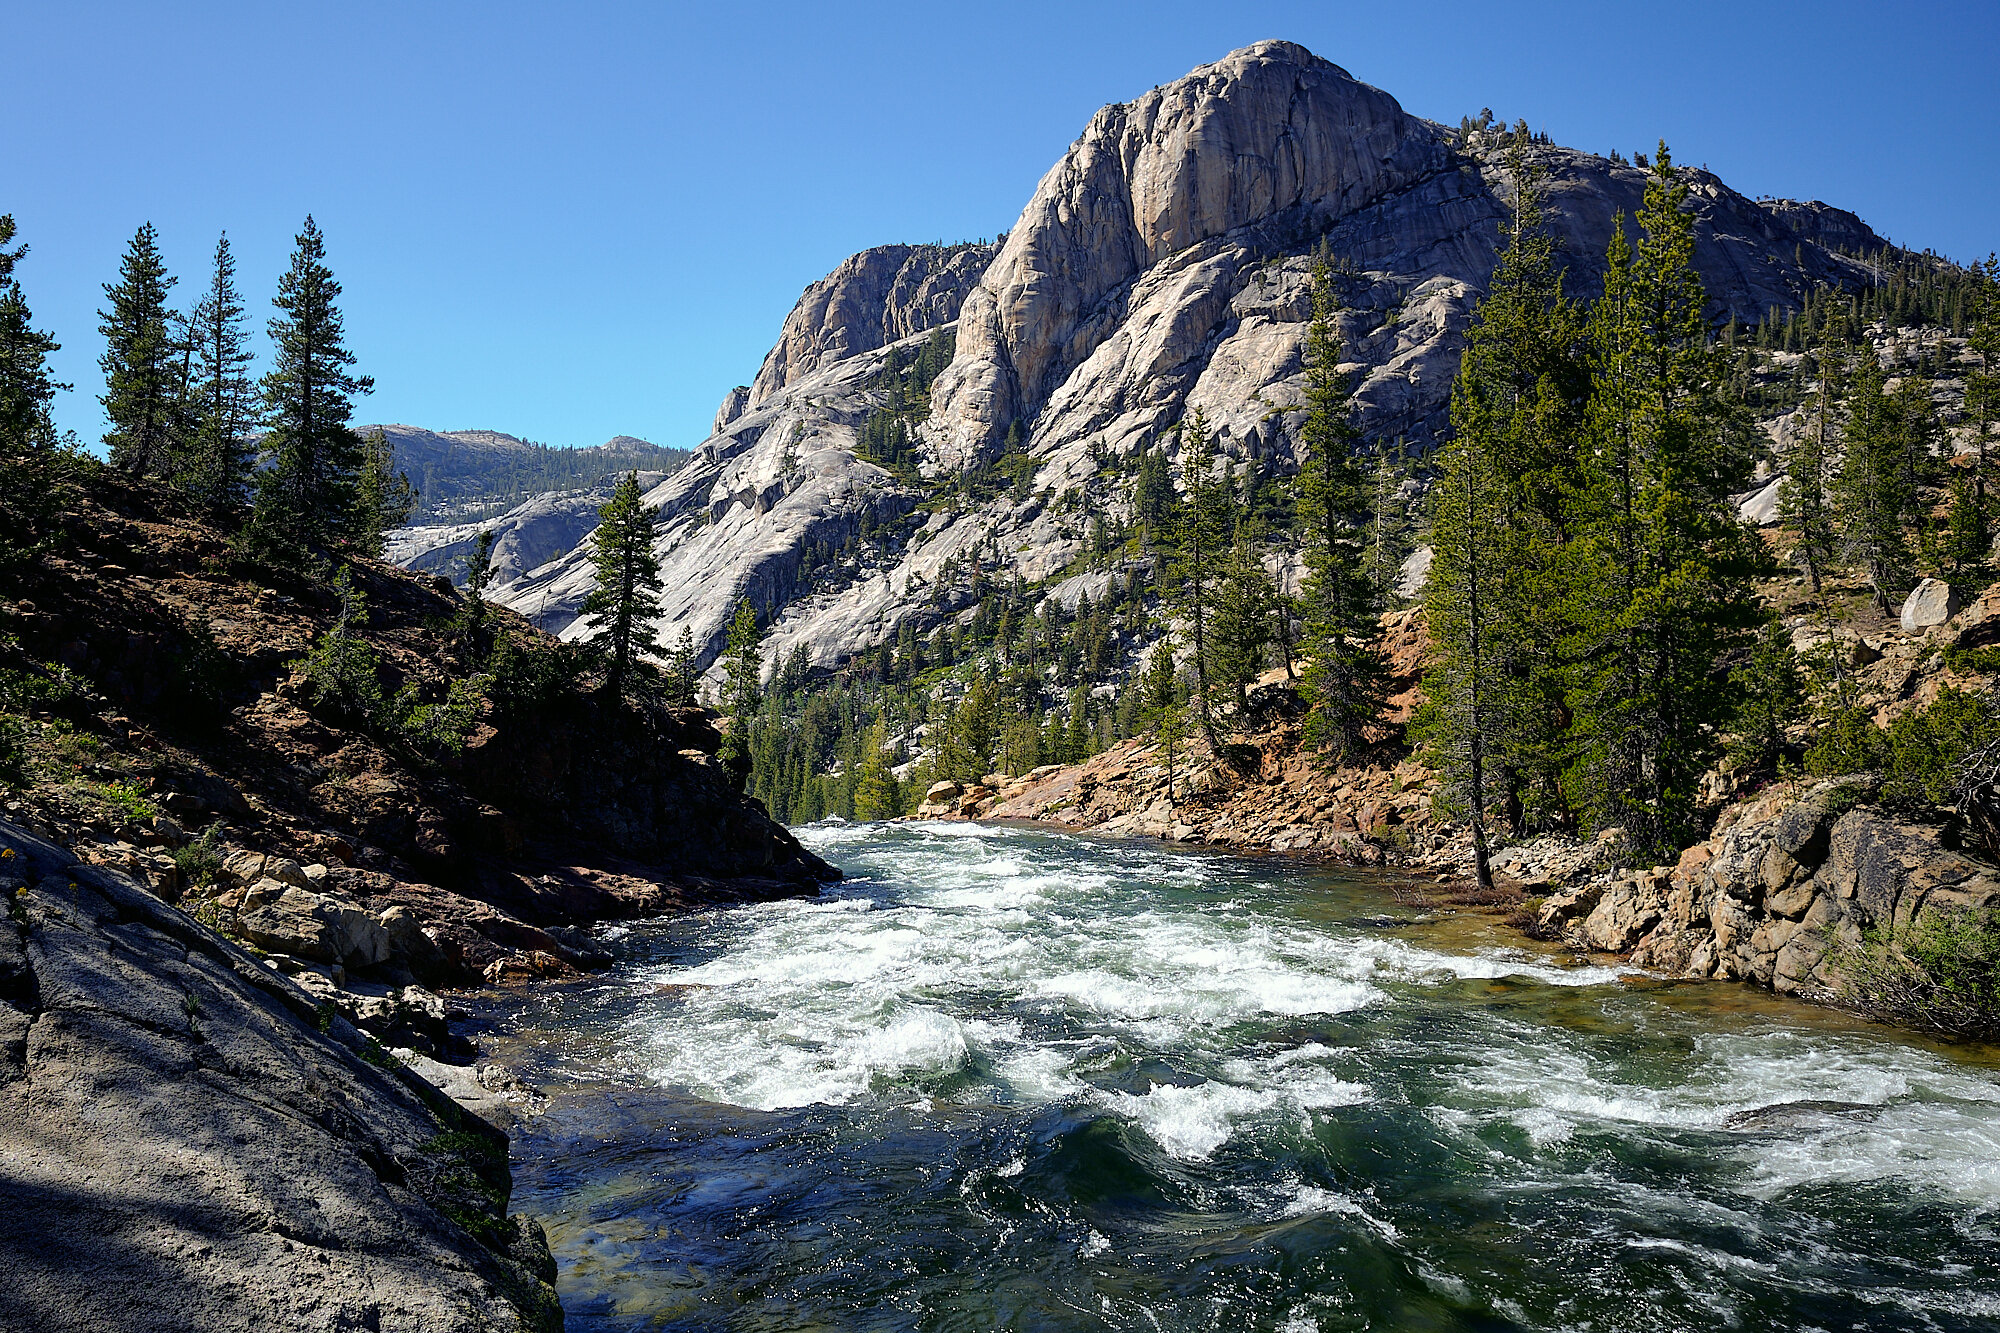  The Tuolumne River in Yosemite National Park. | 7/10/19 Mile 947.0, 8,303' 